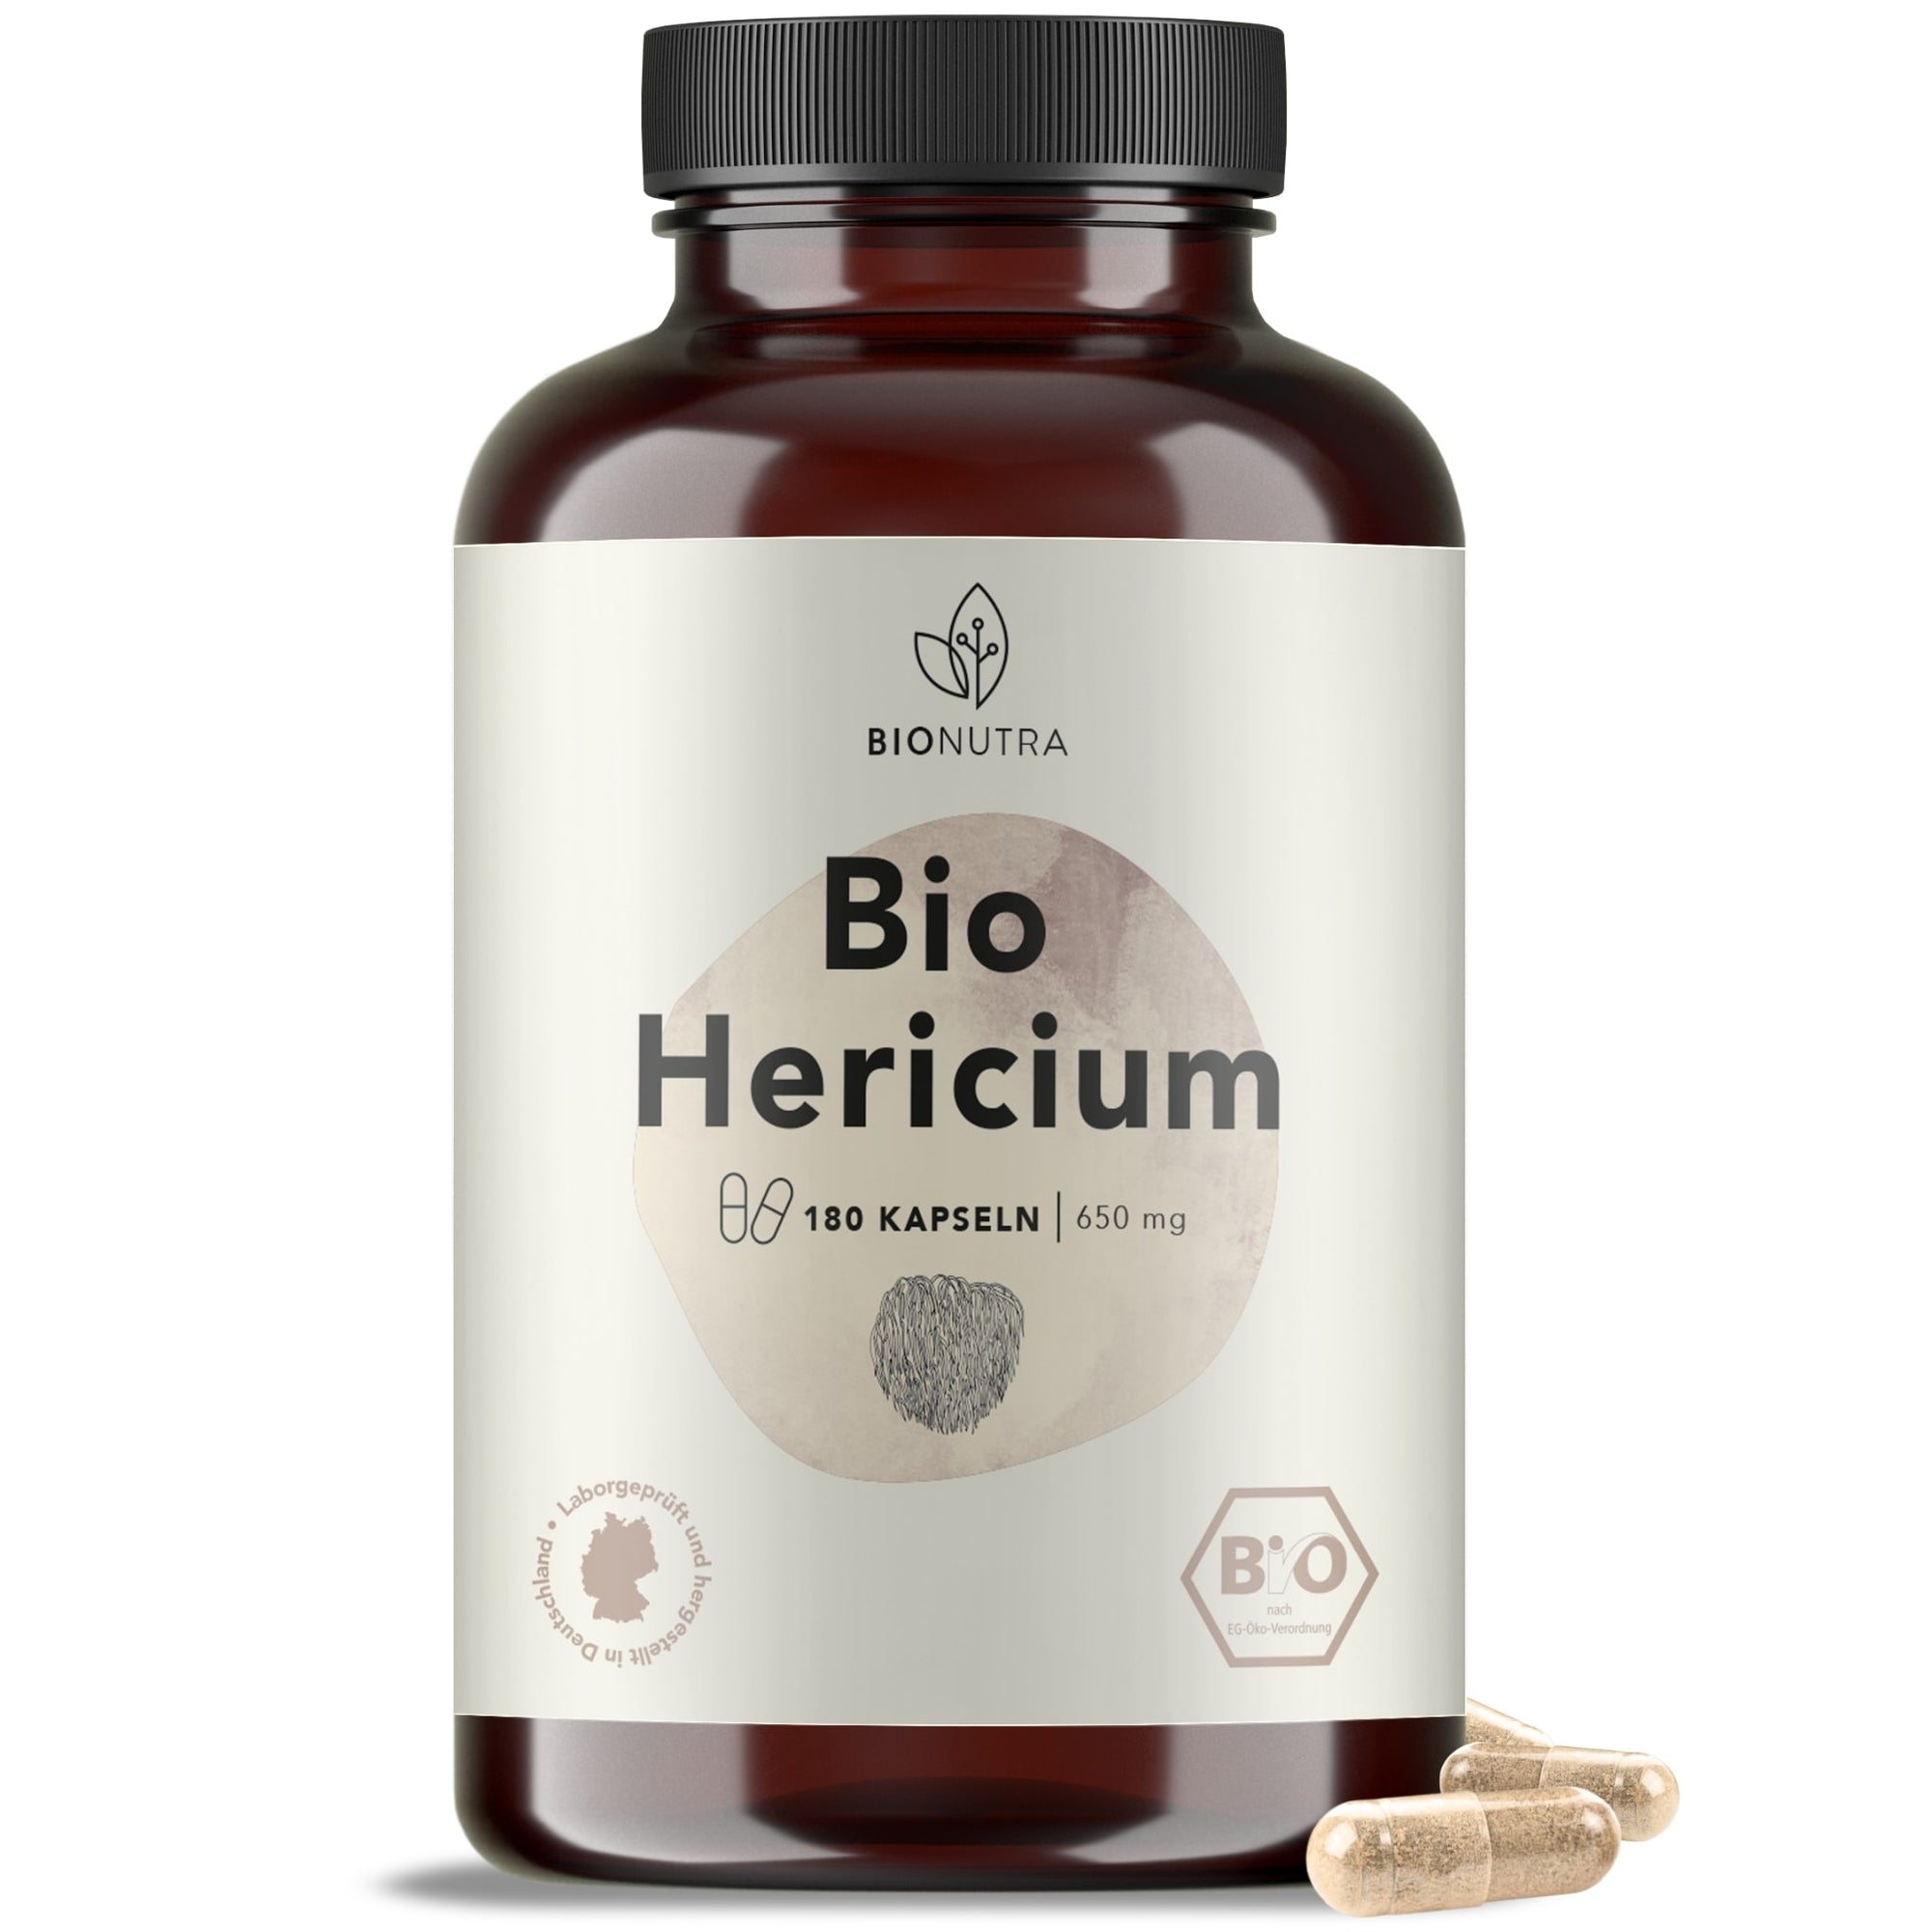 Bio Hericium Kapseln